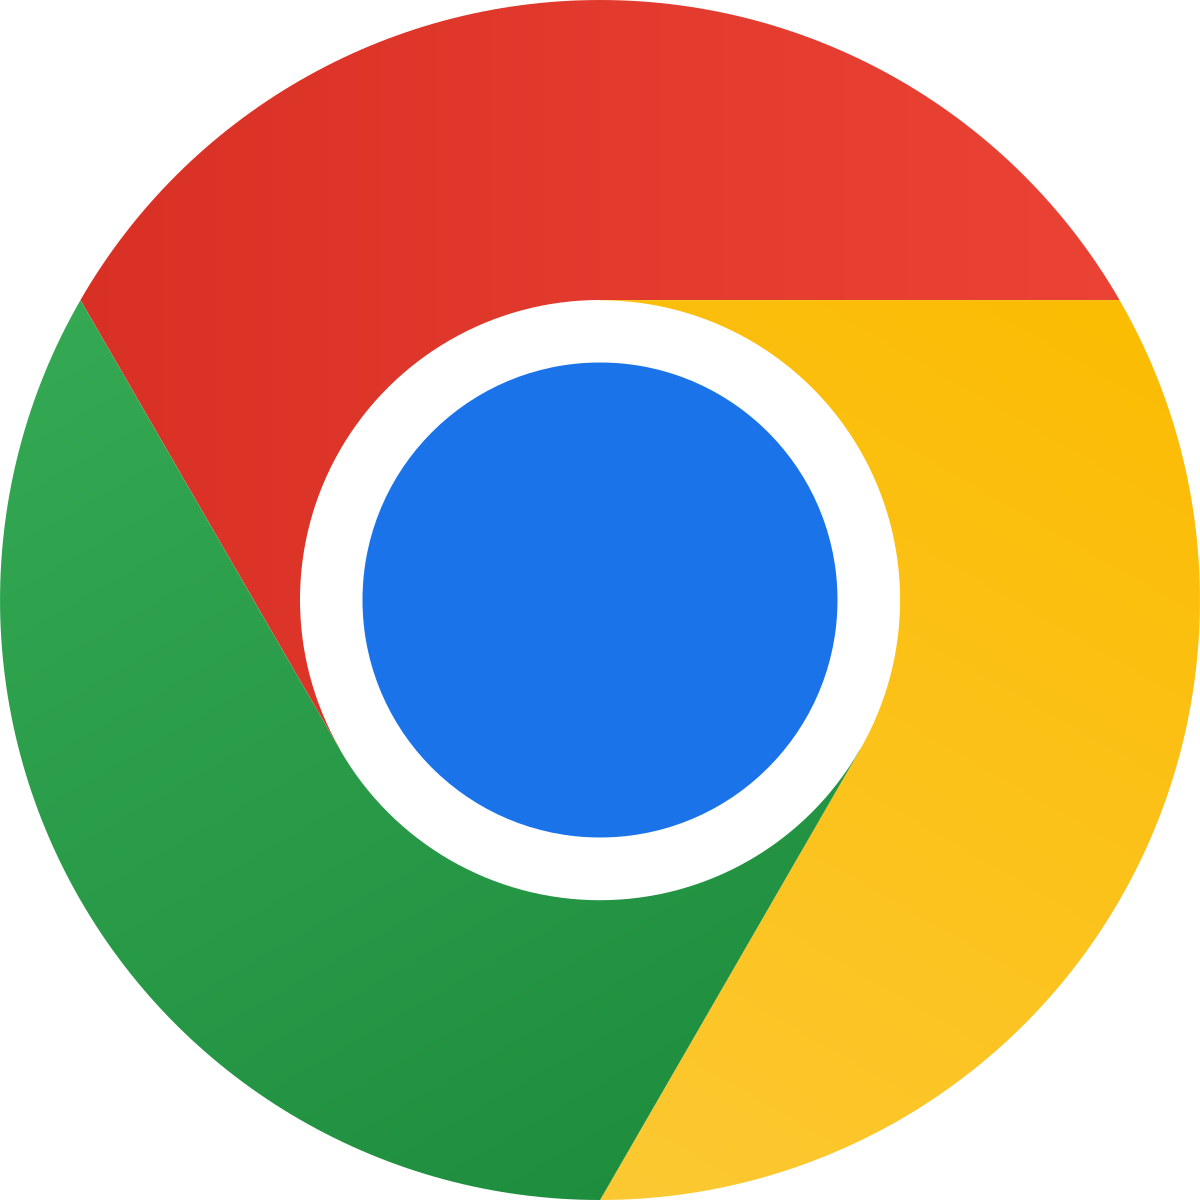 Google Chrome and Internet Explorer icons.